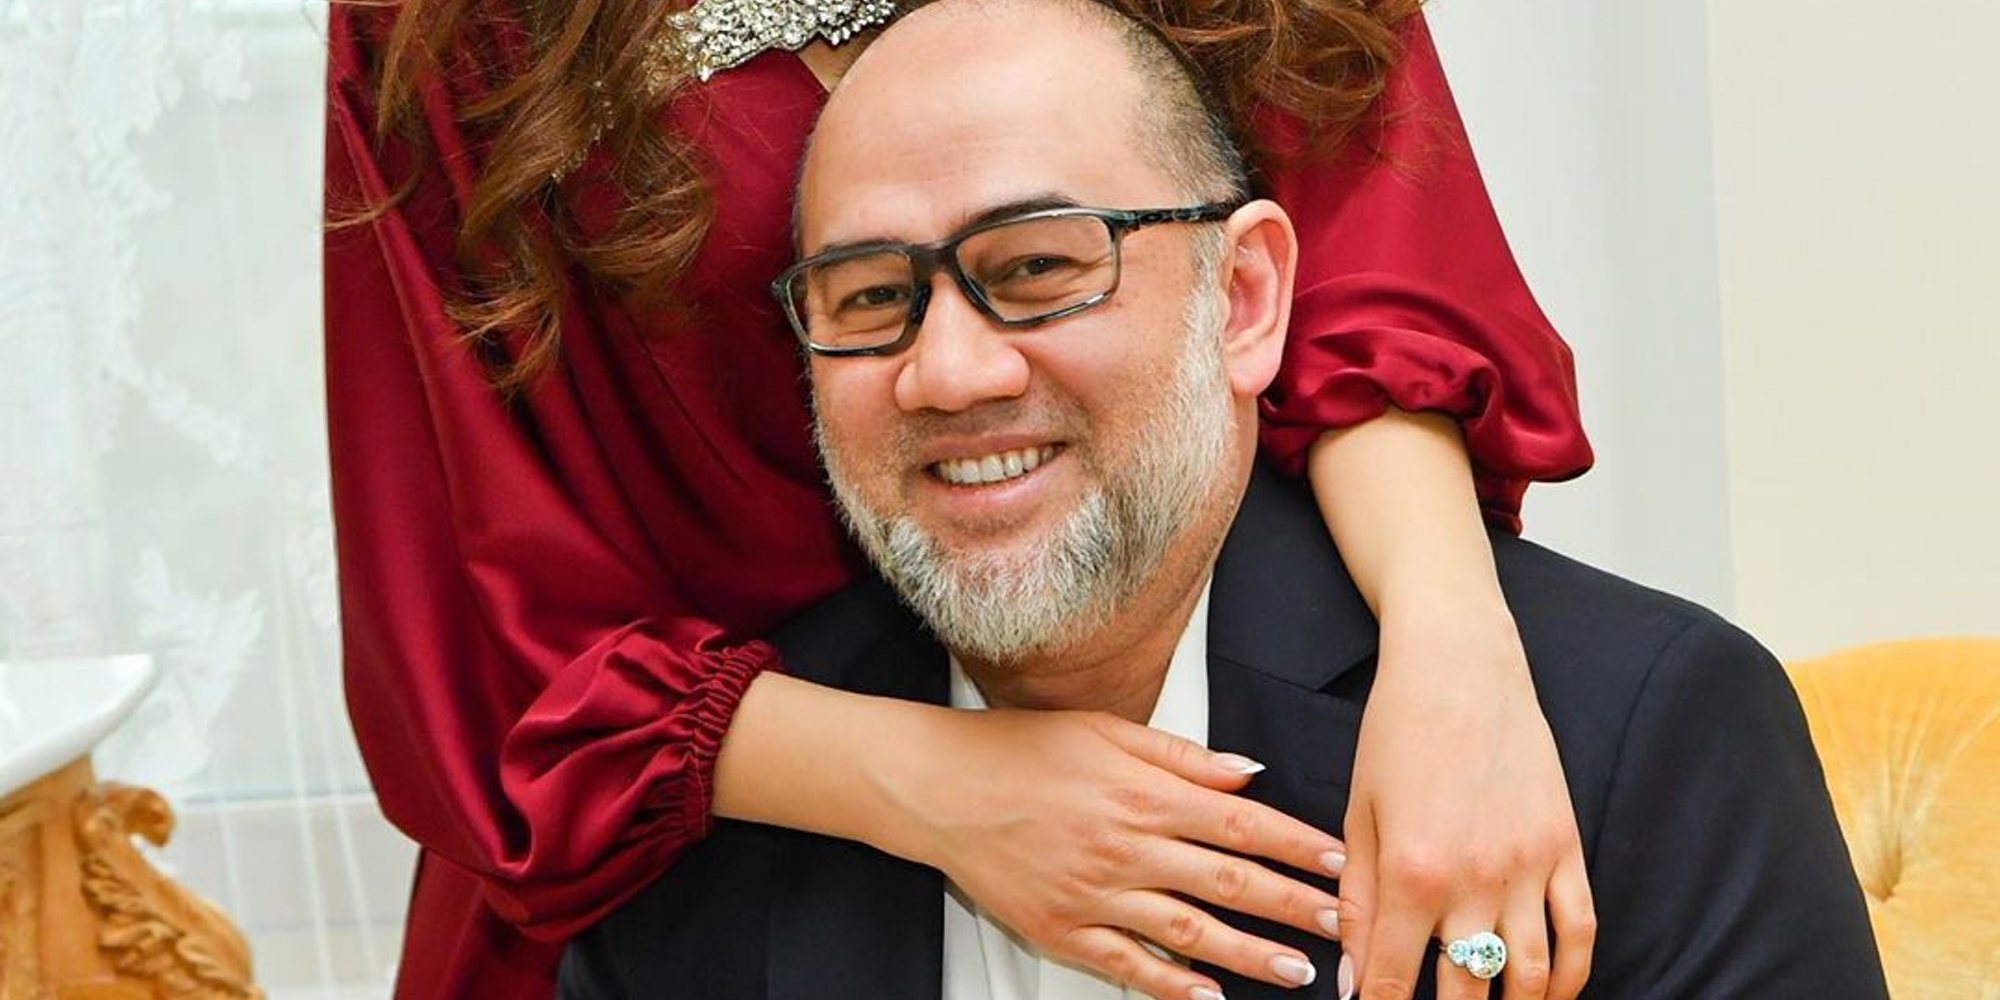 El Rey Mohammed V de Malasia se cuestiona que el hijo de Oksana Voevodina sea suyo